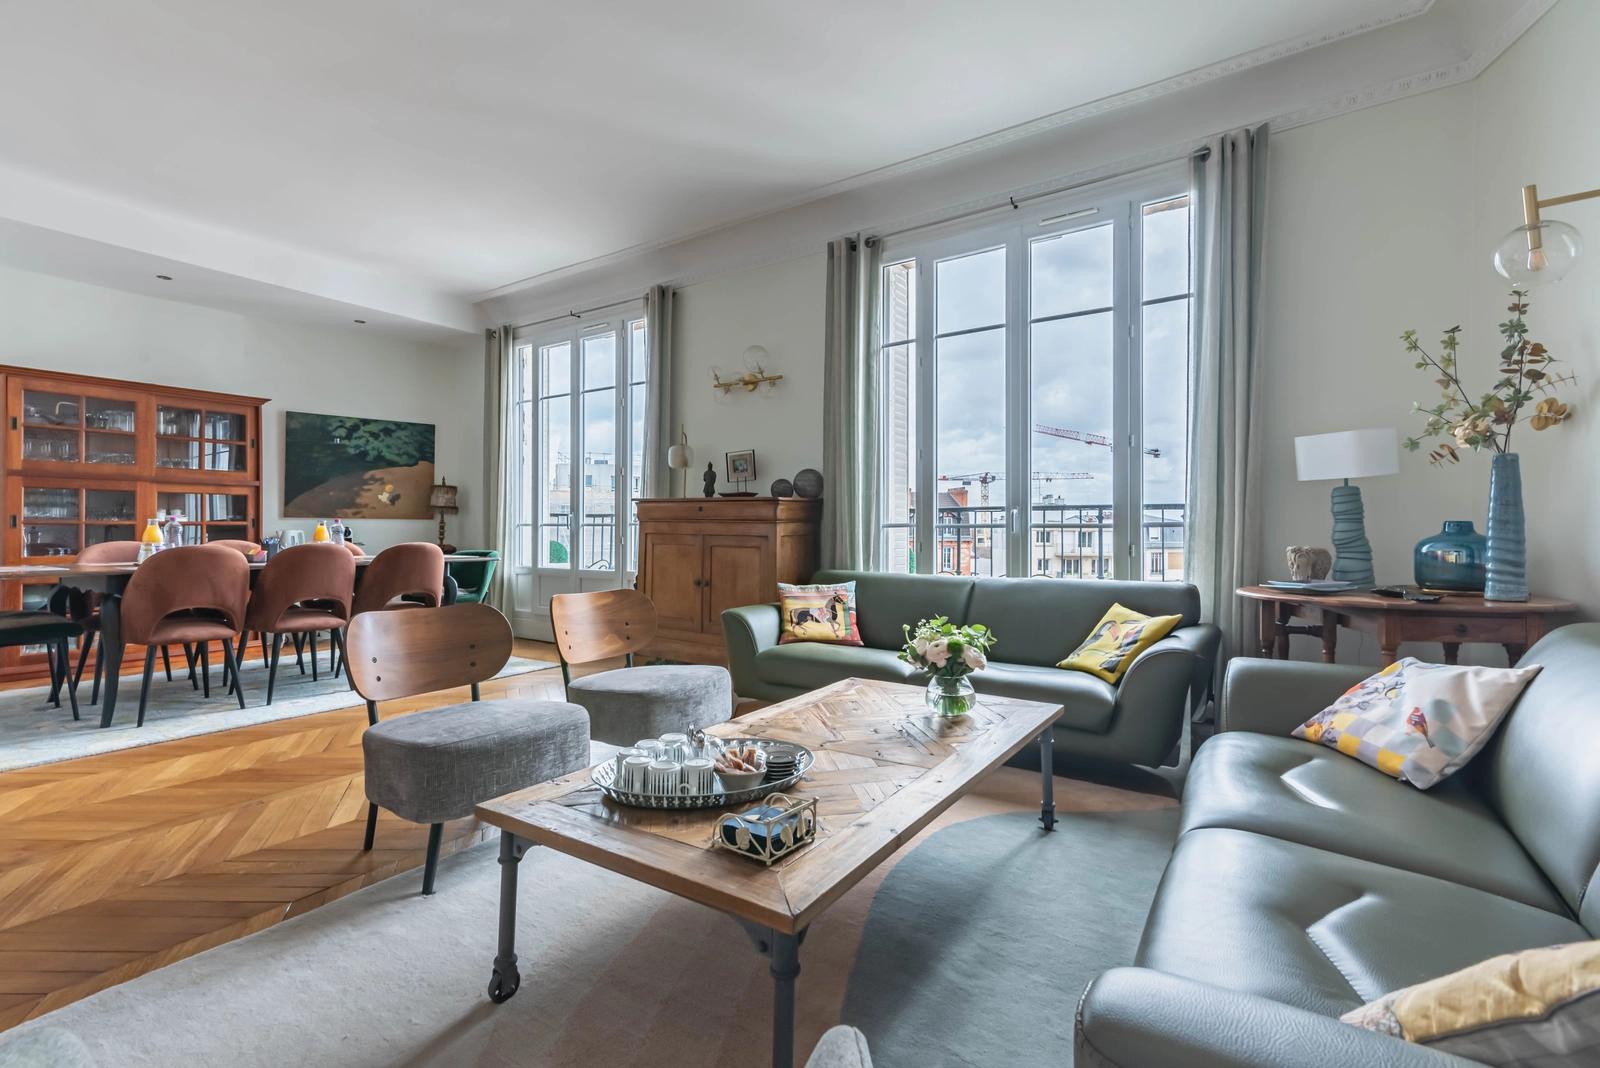 Sala dentro Apartamento de estilo haussmaniano en Enghien les Bains - 3